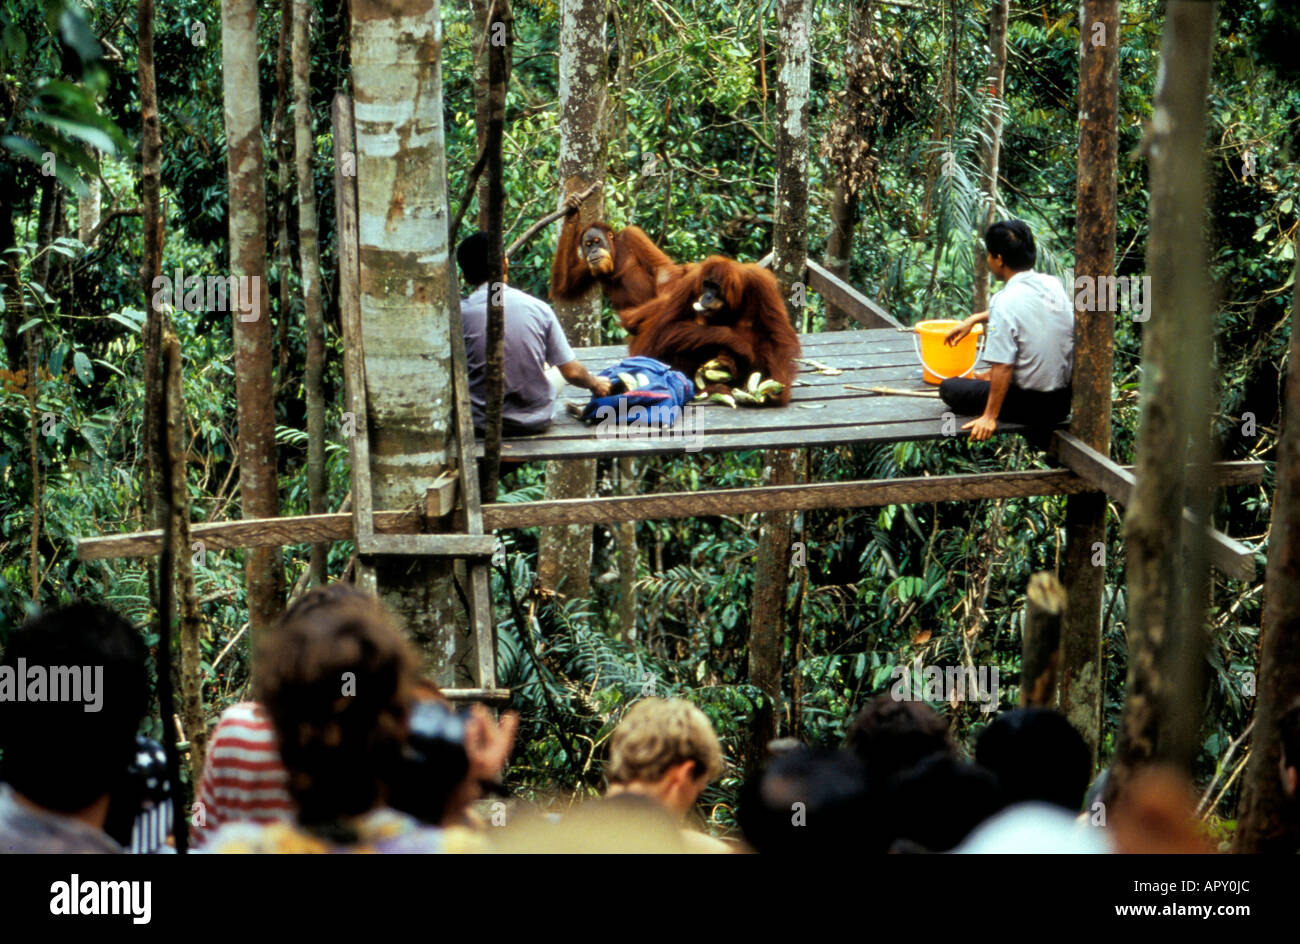 Orang-Utans alimentation centre de réhabilitation des Orang-outans, au parc national de Gunung Leuser, Sumatra, Indonésie, Asie Banque D'Images